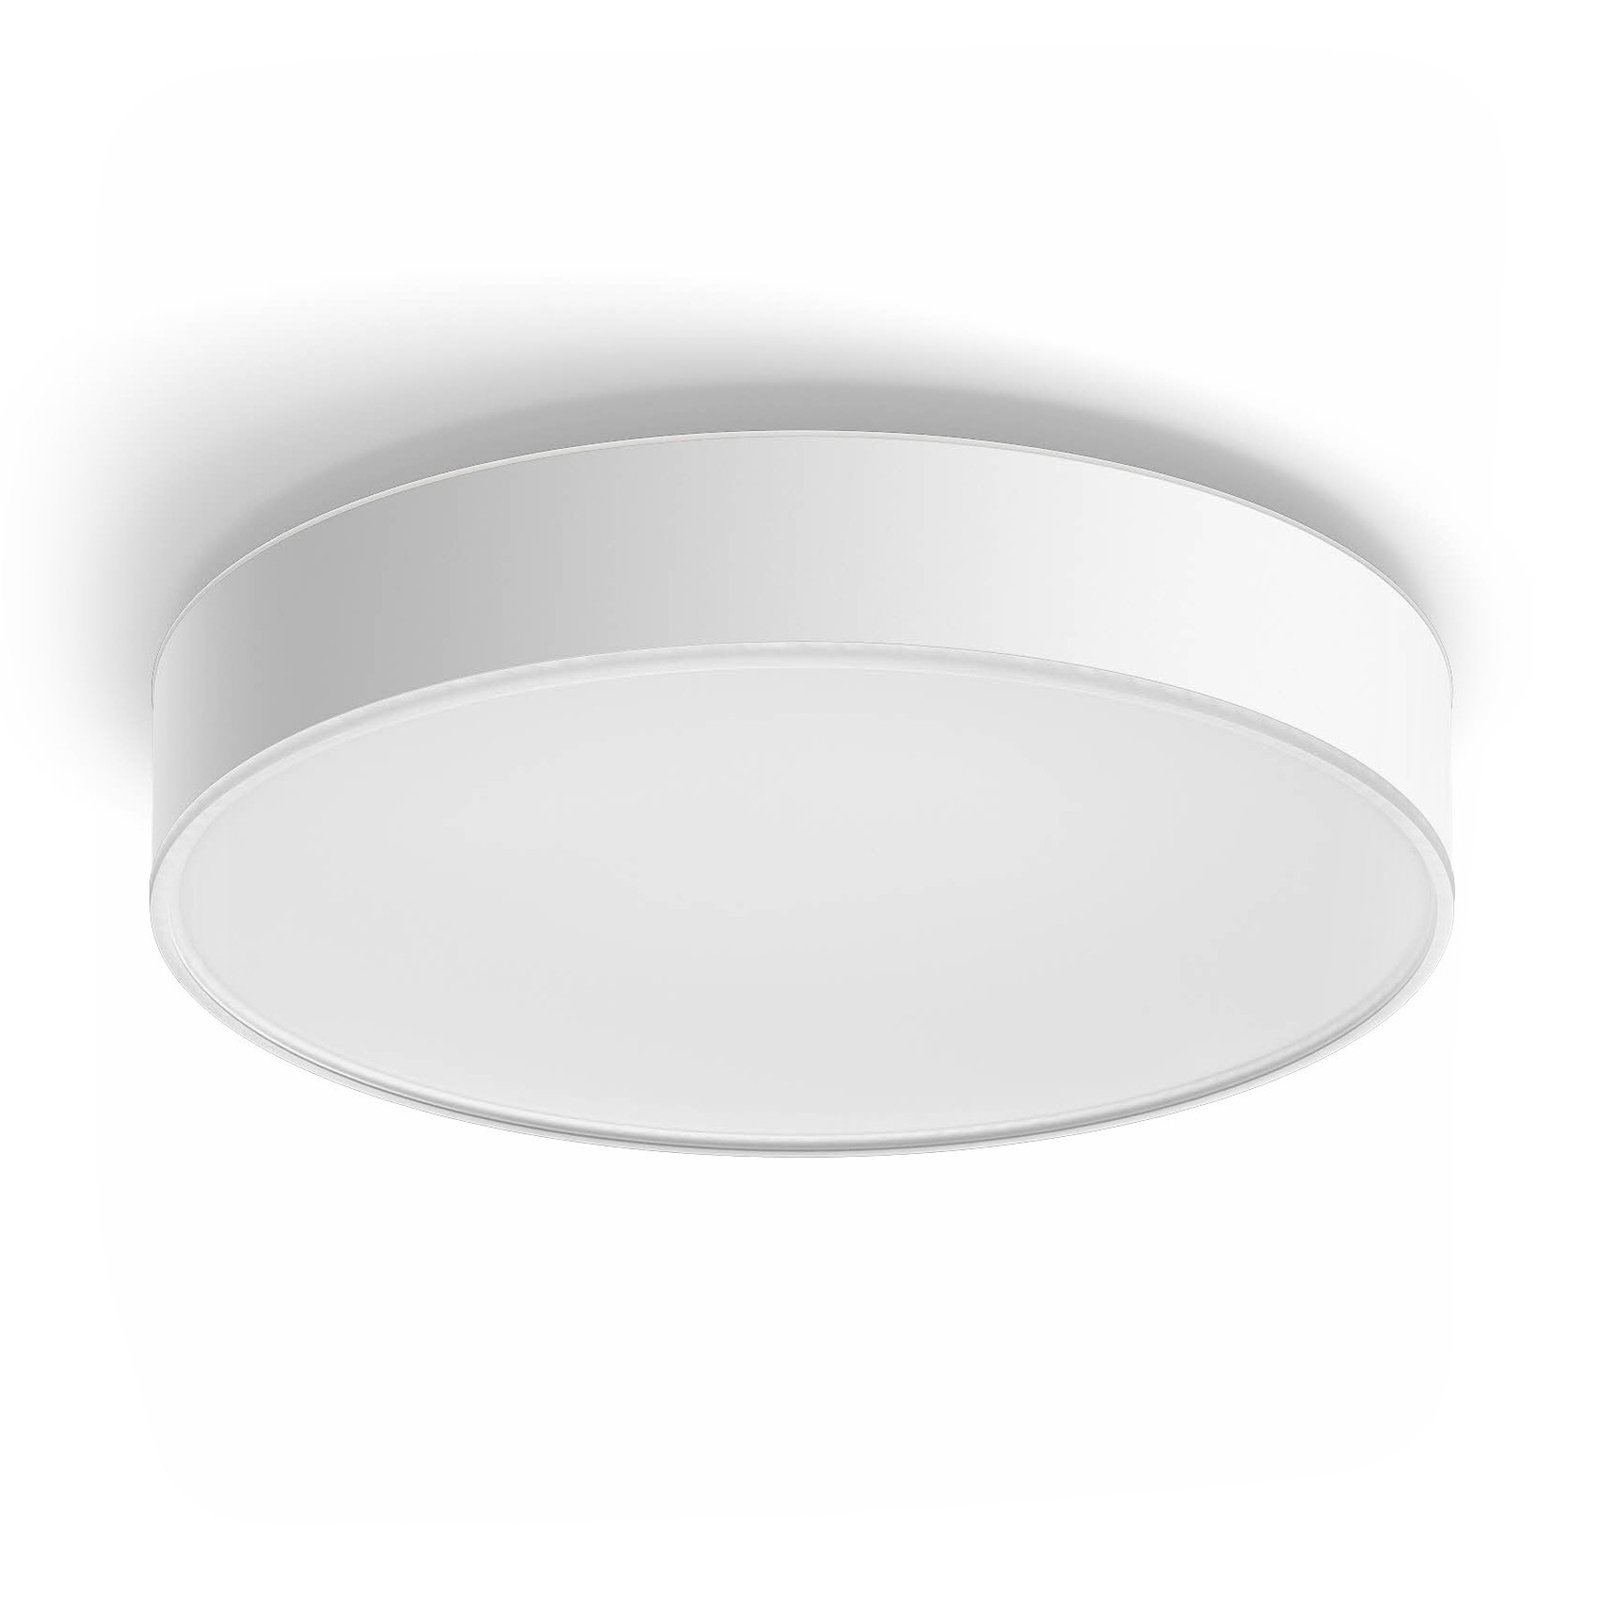 Philips Hue Enrave LED ceiling light 38.1cm white